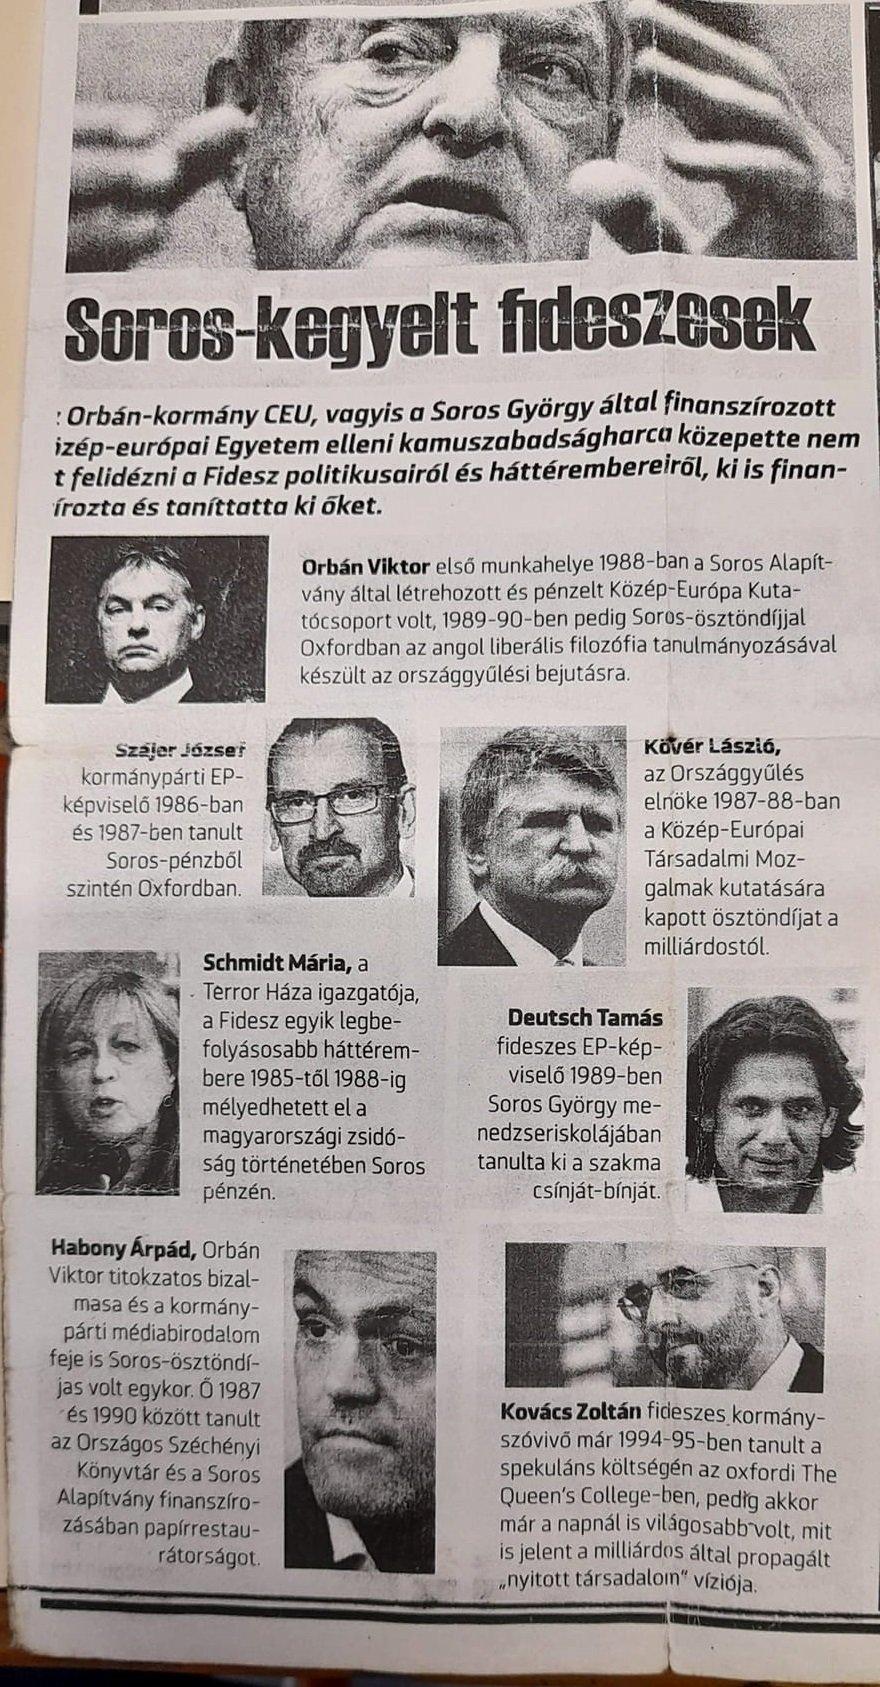 Fidesz krijgt gratie van Soros